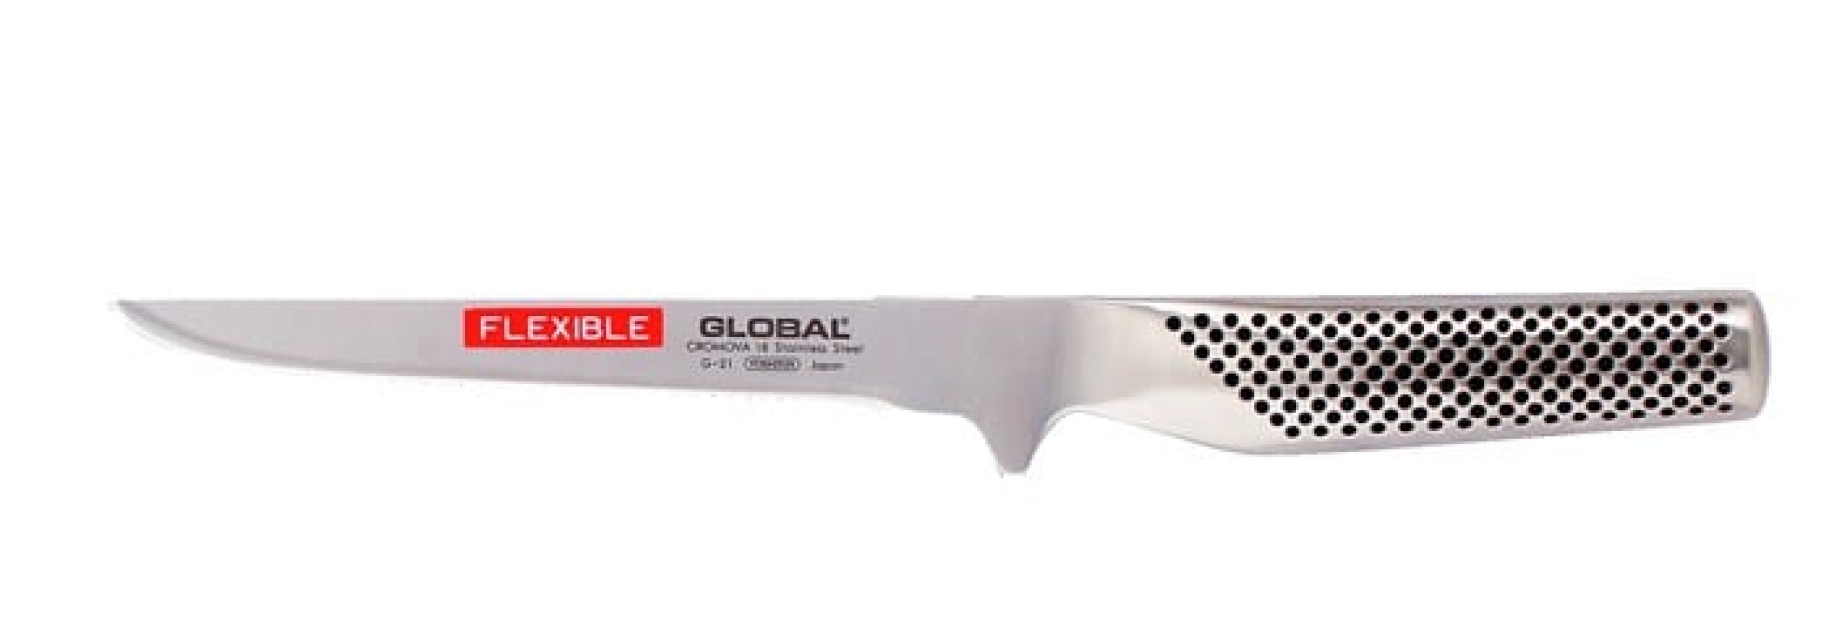 Global G-21 Filetkniv 16cm, fleksibel